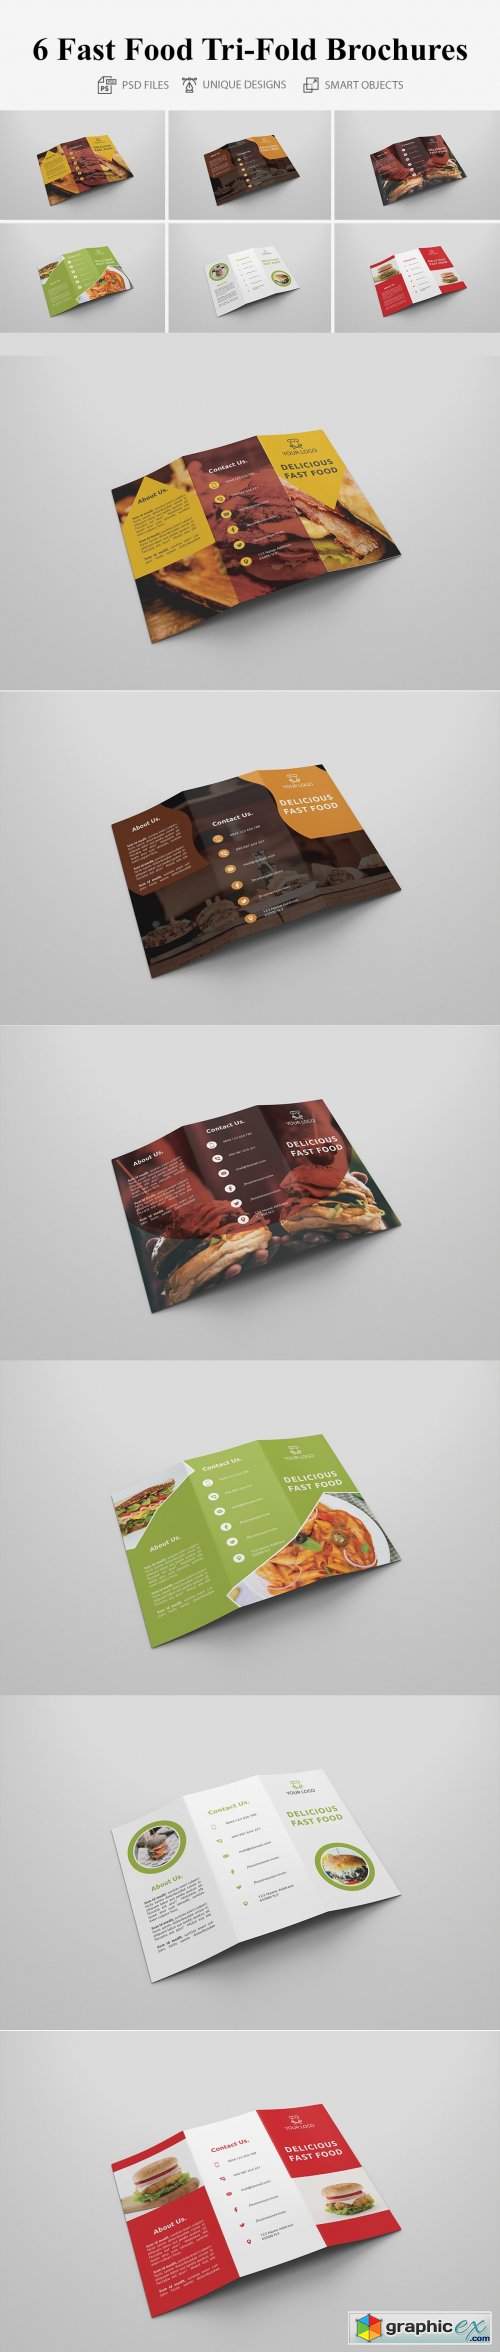 6 Fast Food Tri Fold Bochures